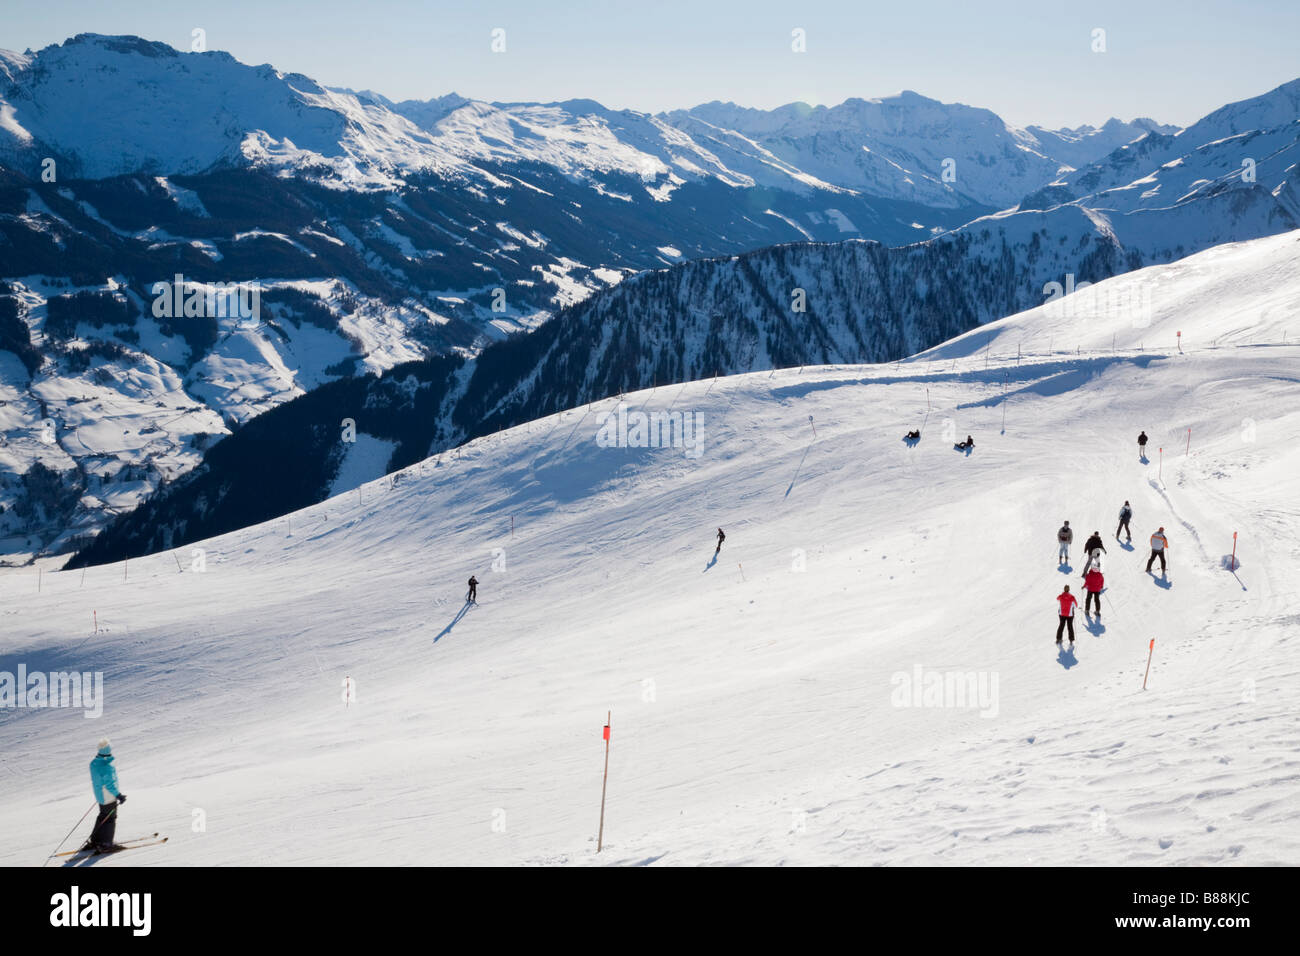 Rauriser Hochalmbahnen ski slope piste in ski resort in Austrian Alps in winter. Distant mountains in Nationalpark Hohe Tauern. Rauris Austria Europe Stock Photo